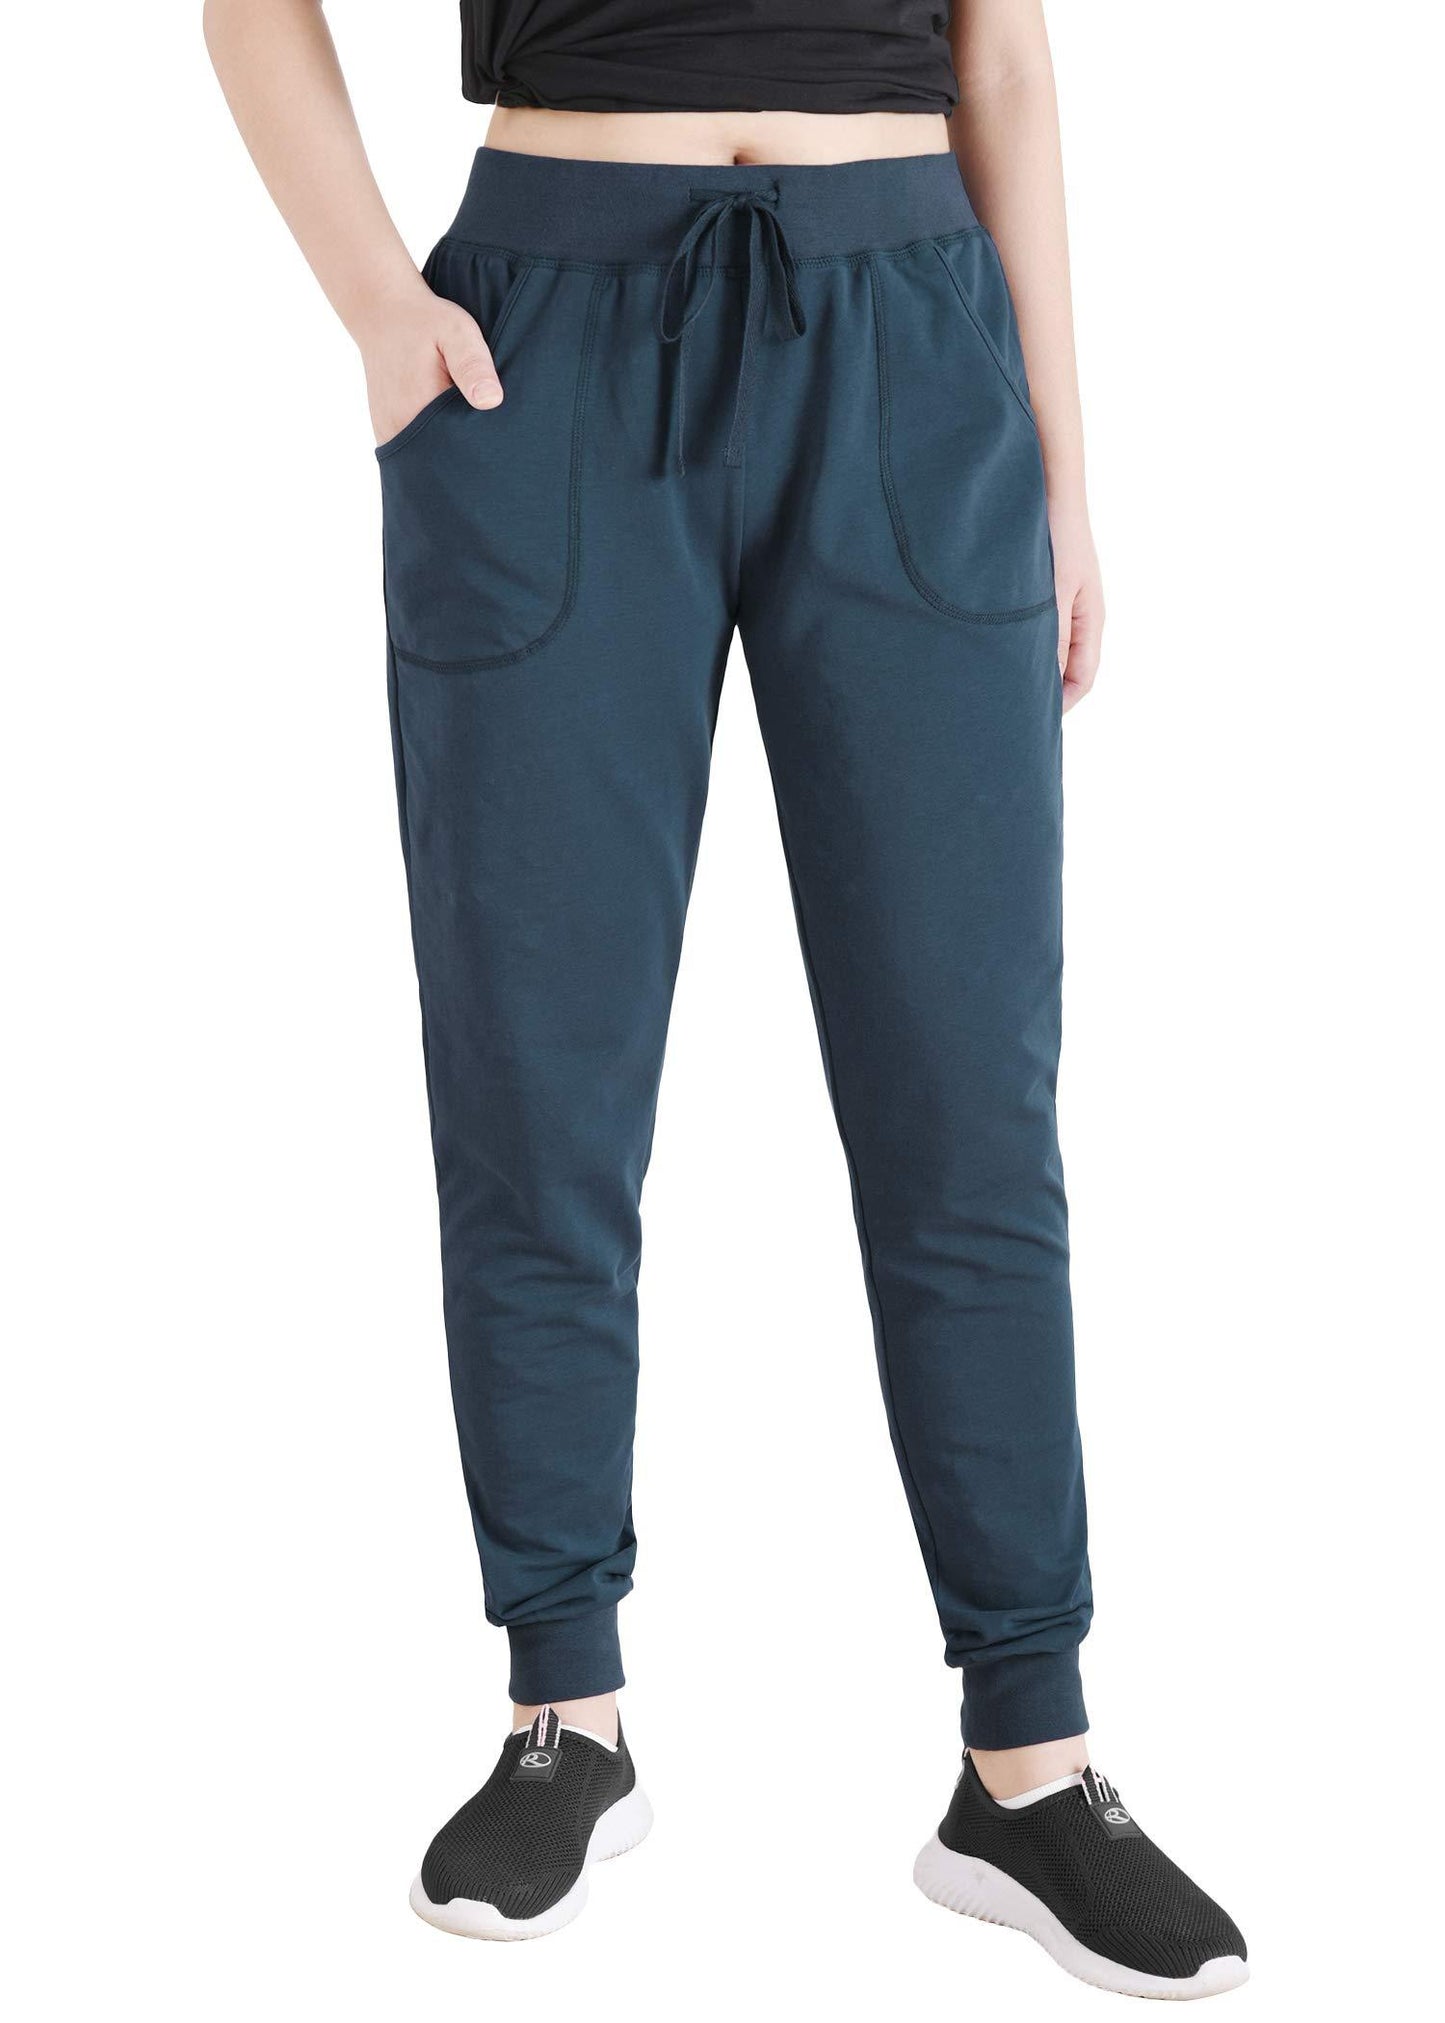 Women's Cotton Joggers Jersey Sweatpants with Pockets - Latuza